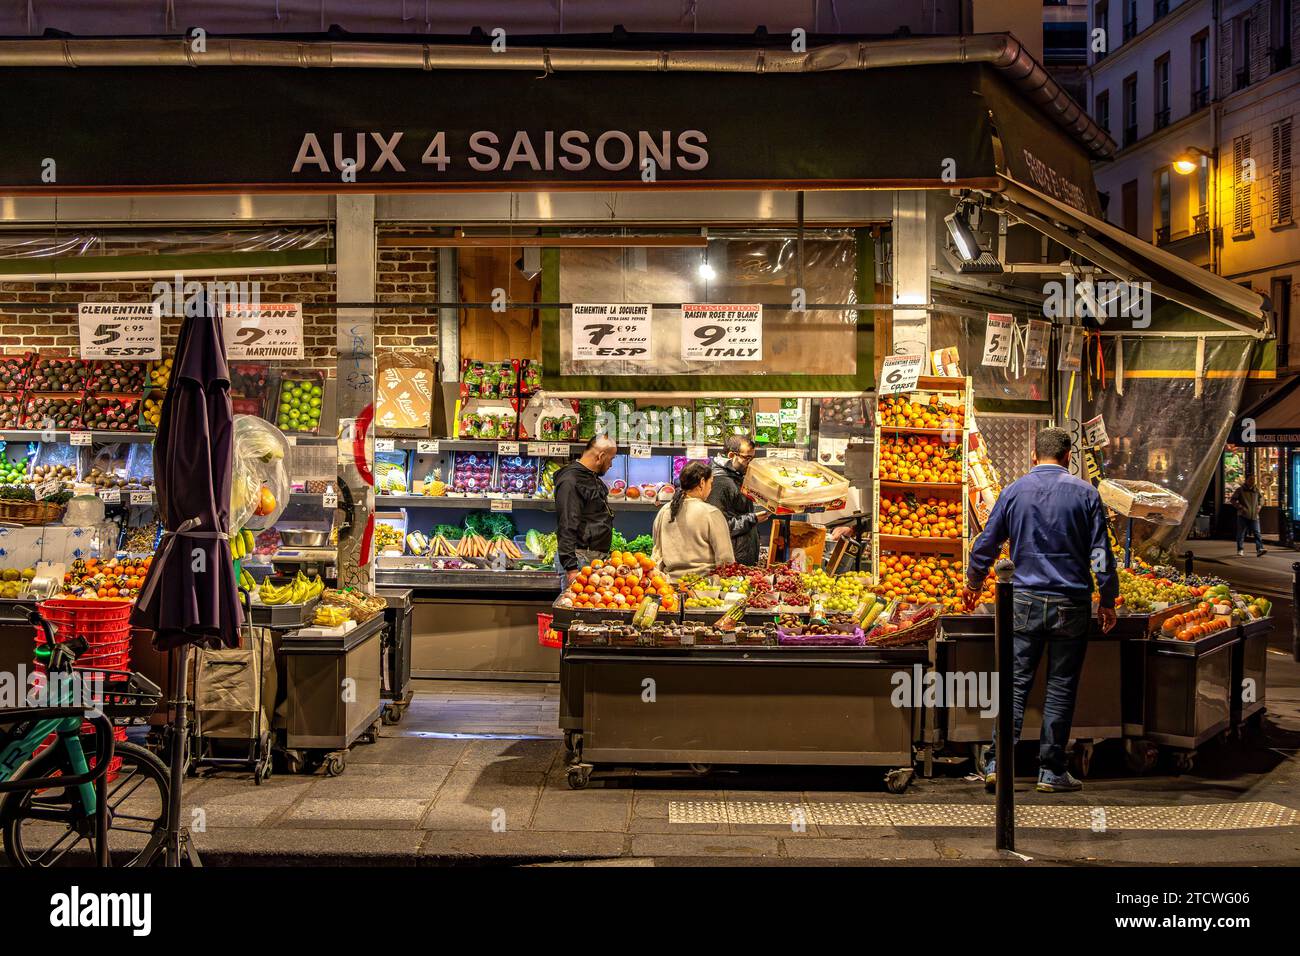 Aux 4 saisons un magasin de fruits et légumes rue des Martyrs, dans le 9e arrondissement de Paris, France Banque D'Images